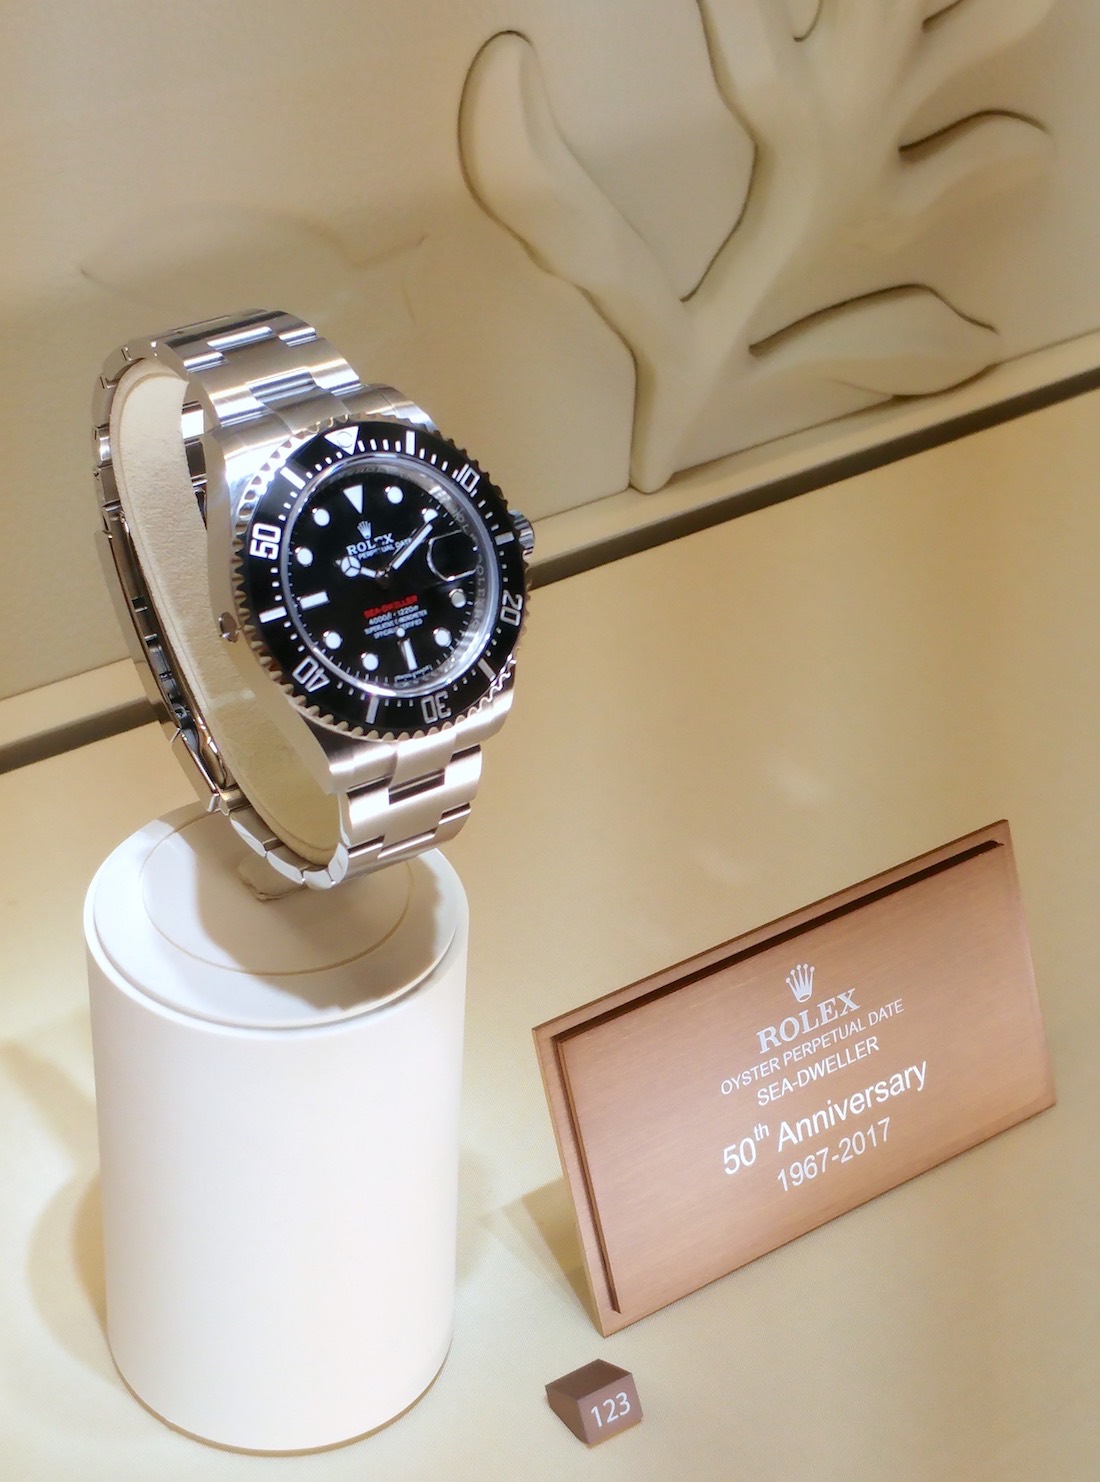 Просто названный Rolex Oyster Perpetual Sea-Dweller, Rolex фактически представил его как модель 50-летия в своих окнах вокруг своего стенда Baselworld